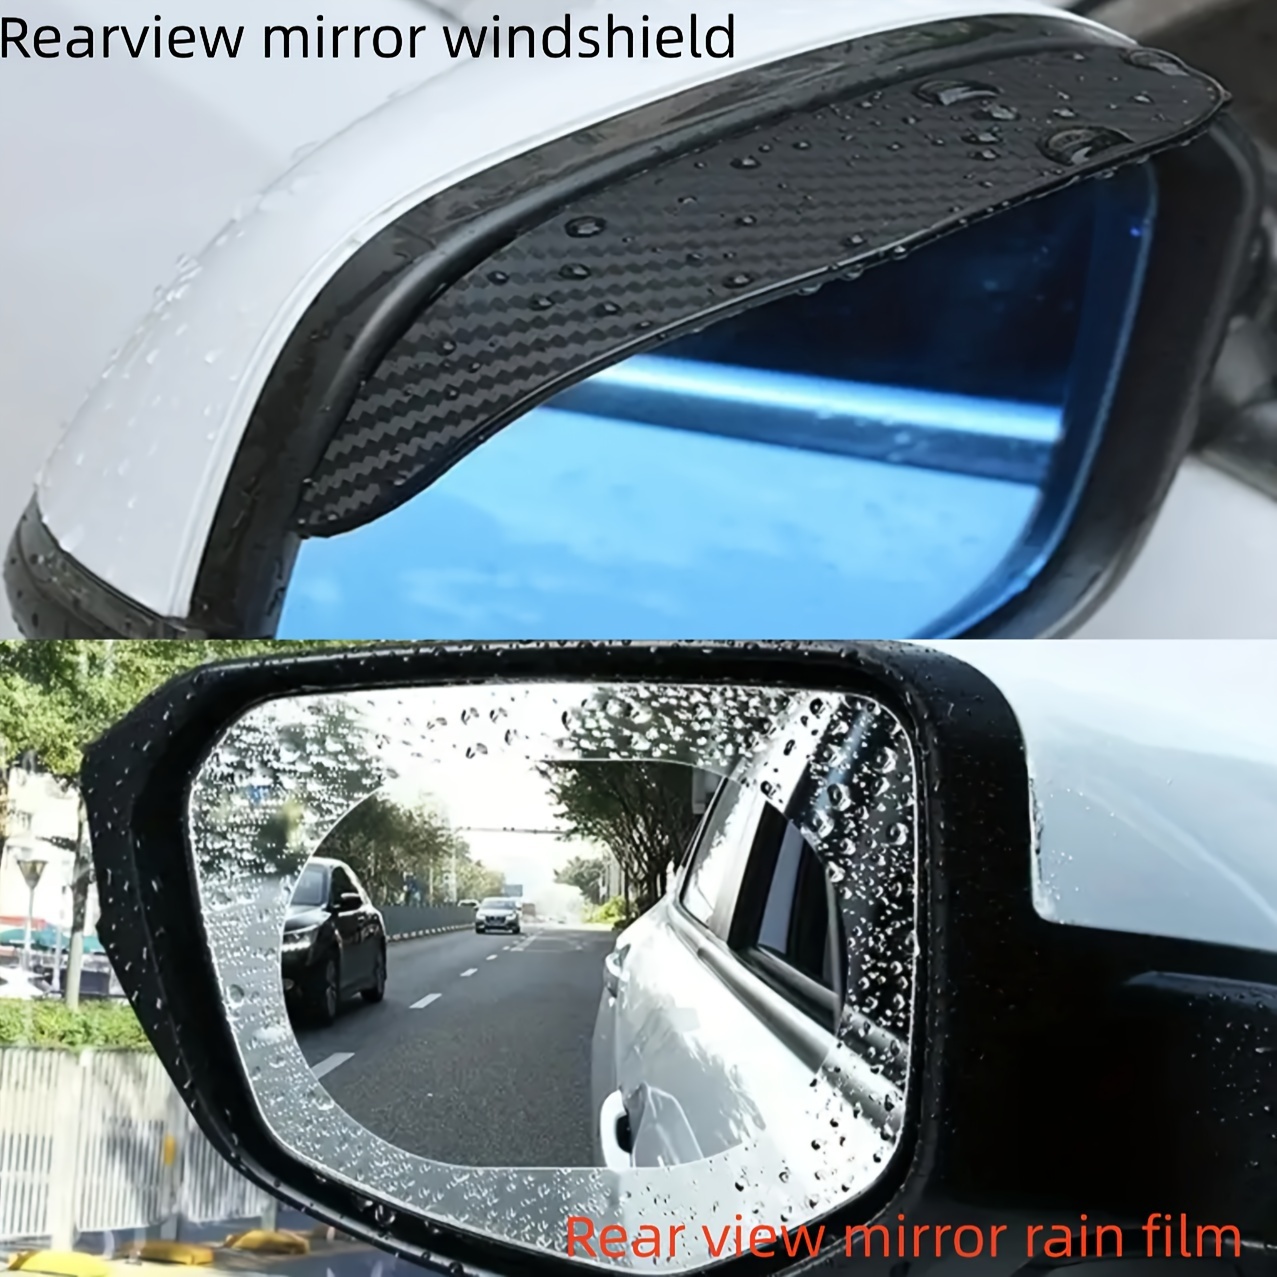  Asudaro Rétroviseur de voiture sourcils, 2 pièces housses anti- pluie d'automobile, miroir étanche à la pluie rétroviseur de voiture housse  de protection étanche pour housses de miroir de voiture